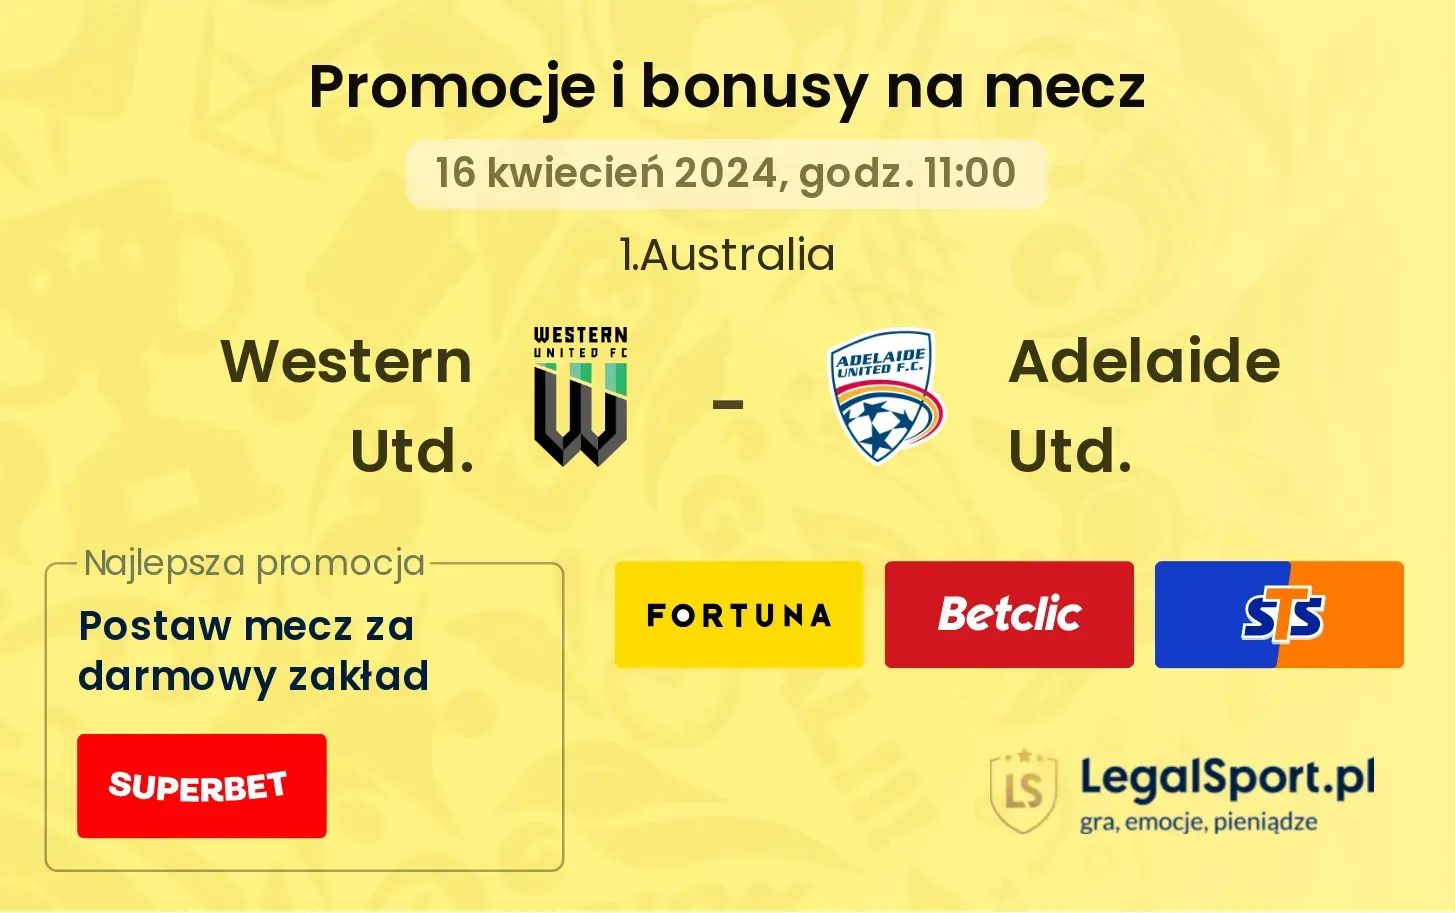 Western Utd. - Adelaide Utd. promocje bonusy na mecz